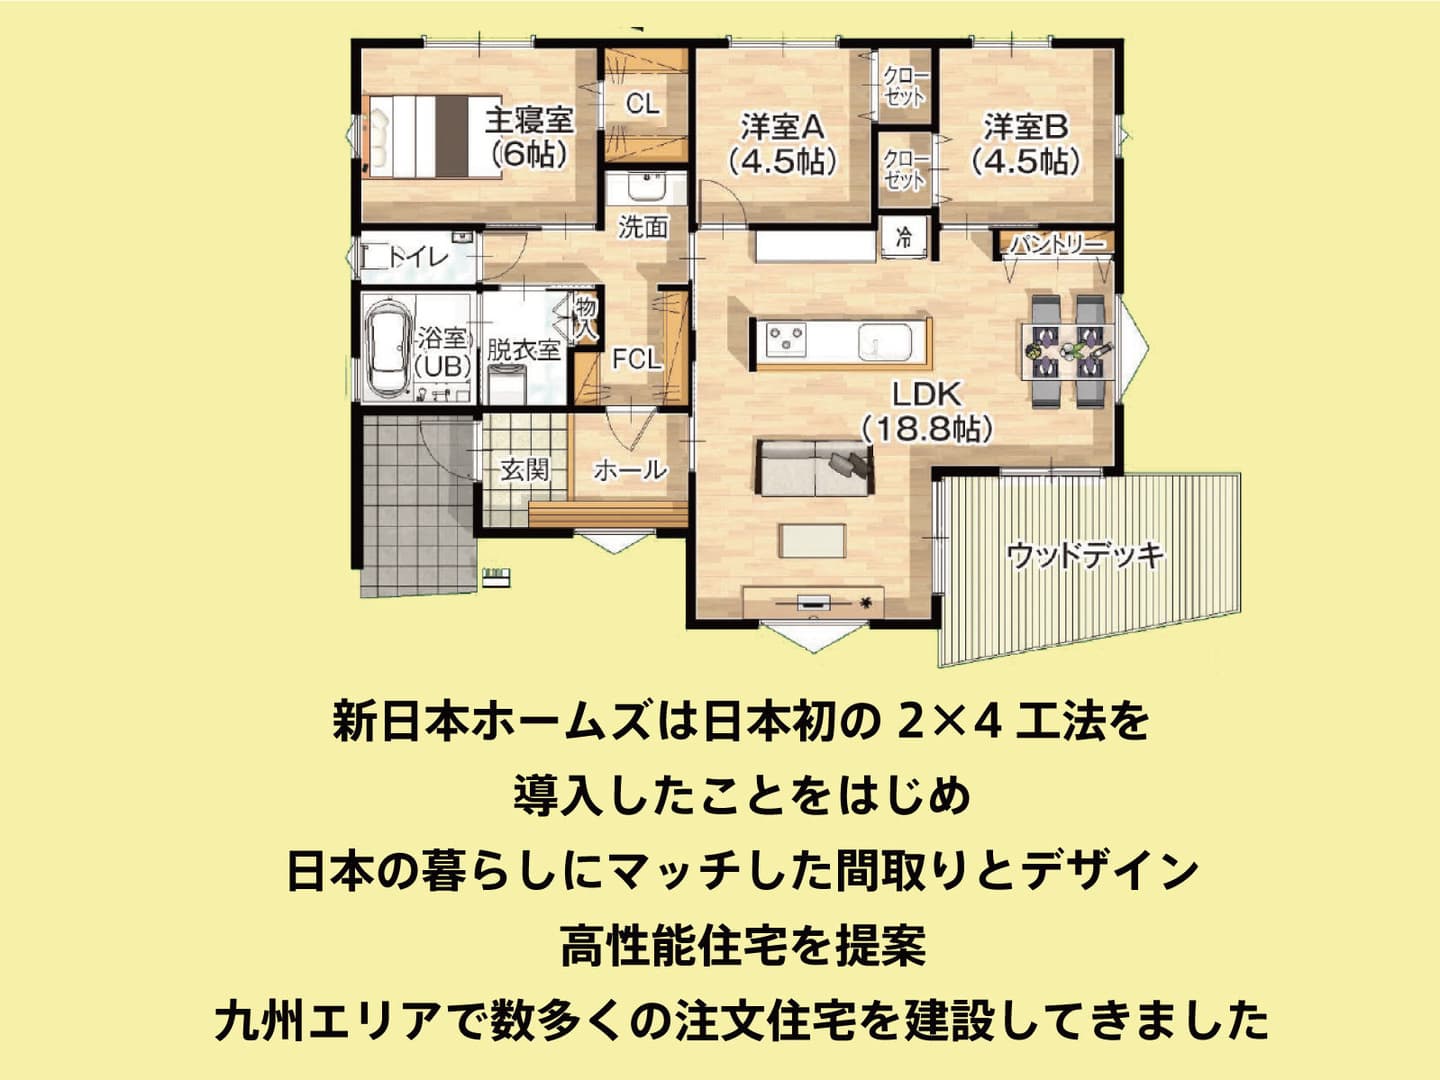 新日本ホームズは日本初の2×4工法を 導入したことをはじめ 日本の暮らしにマッチした間取りとデザイン 高性能住宅を提案 九州エリアで数多くの注文住宅を建設してきました。 家事らくの家は これまでの 注文住宅を建てる中で お客様の声に答えた 生活導線を実現！家に長くいる奥様やお子様が 暮らしやすいだけではなく注文住宅品質を 建売価格で実現した高コスパ住宅です！